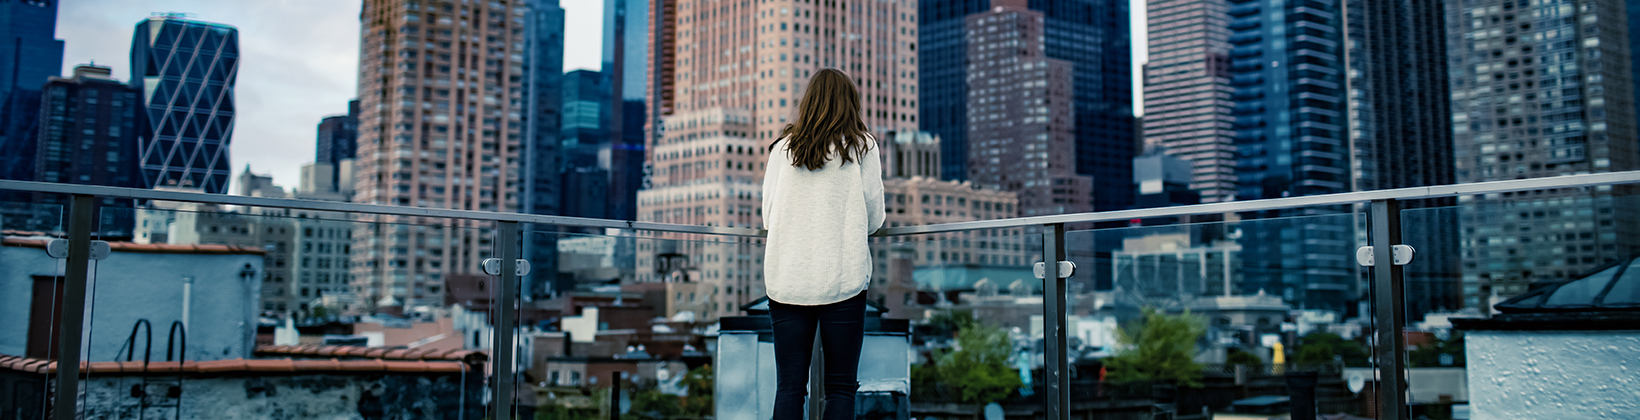 woman looking at city